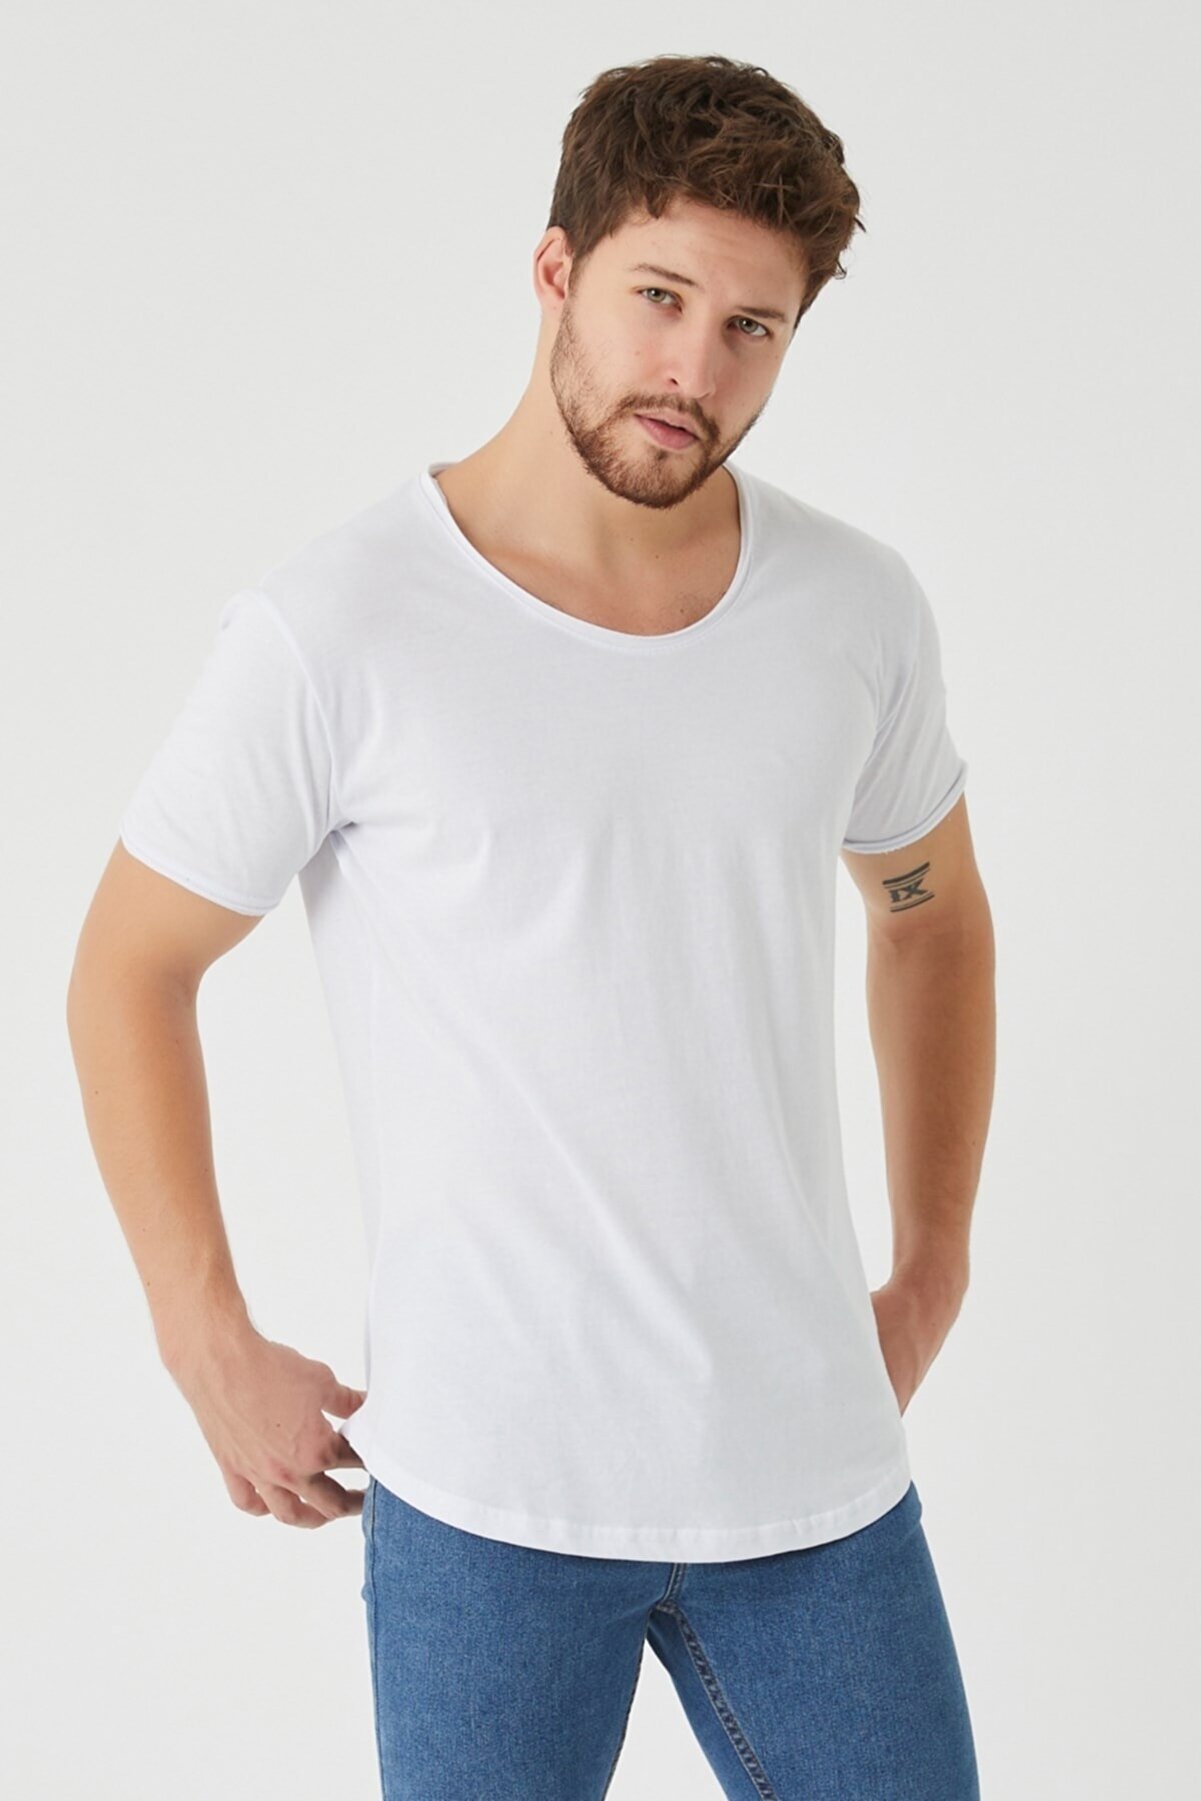 Tarz Cool Erkek Beyaz Pis Yaka Salaş T-shirt